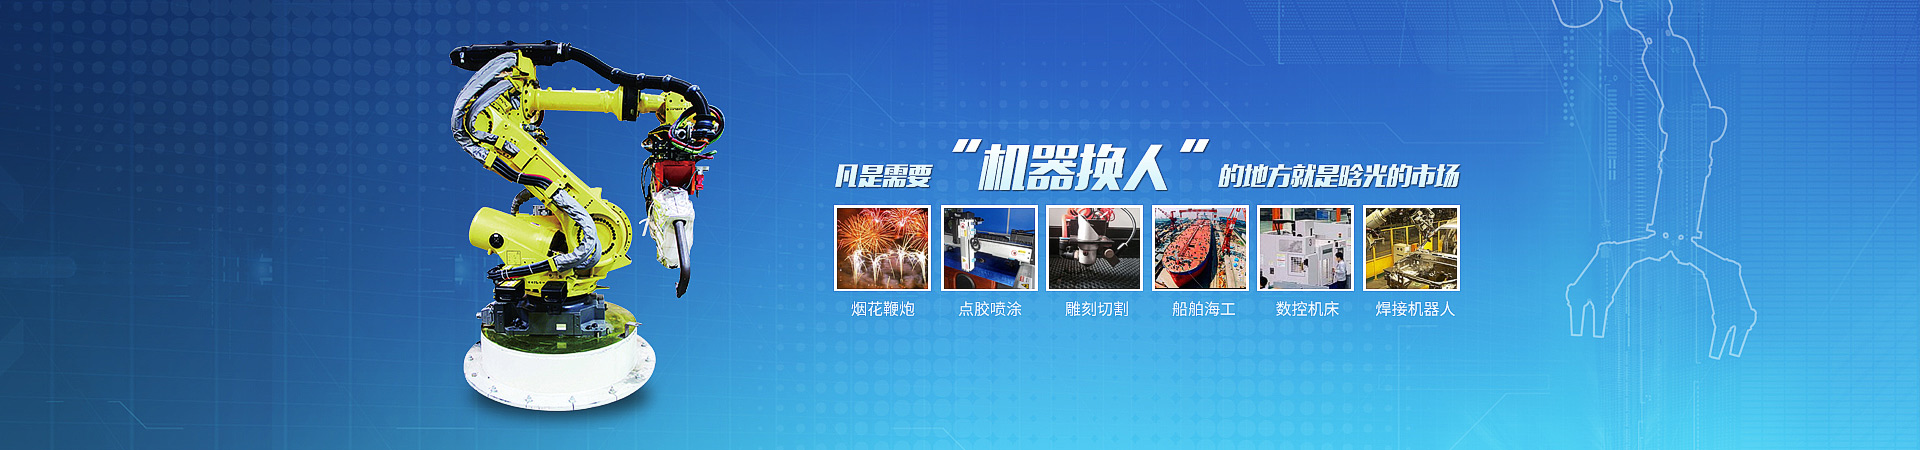 皇冠游戏官方网站(中国)有限公司官网智能